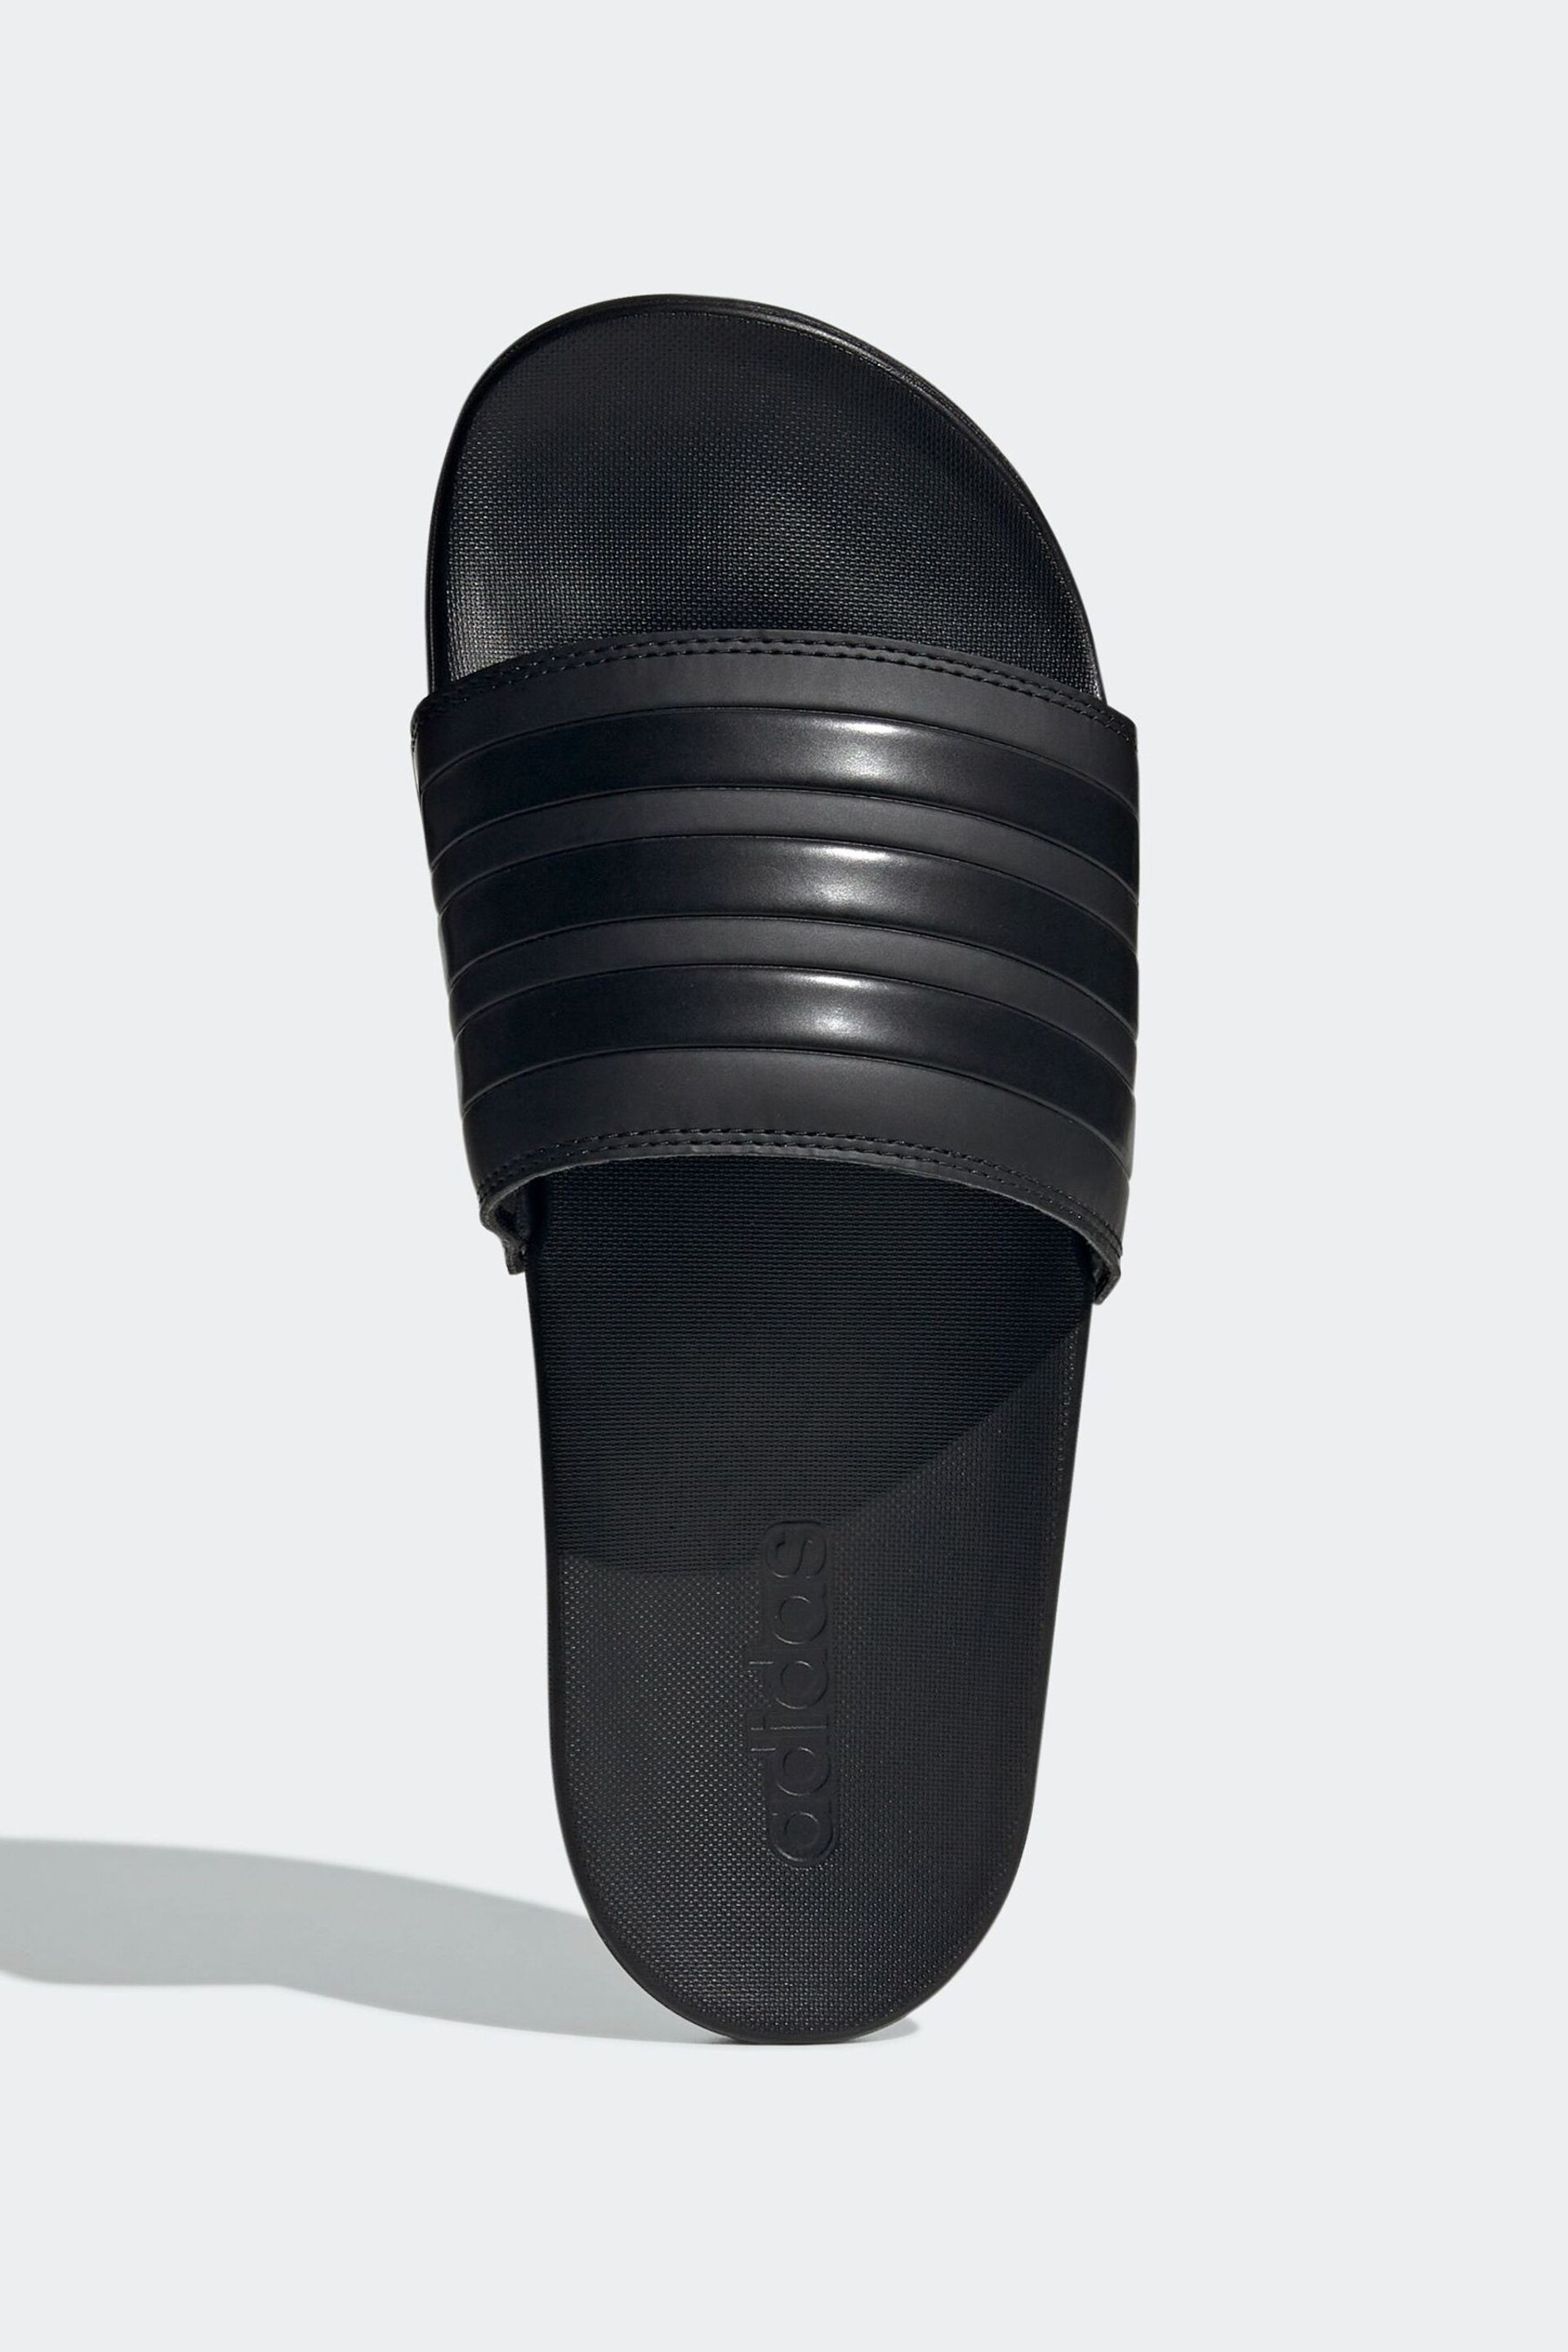 adidas Black Adilette Comfort Slides - Image 4 of 9